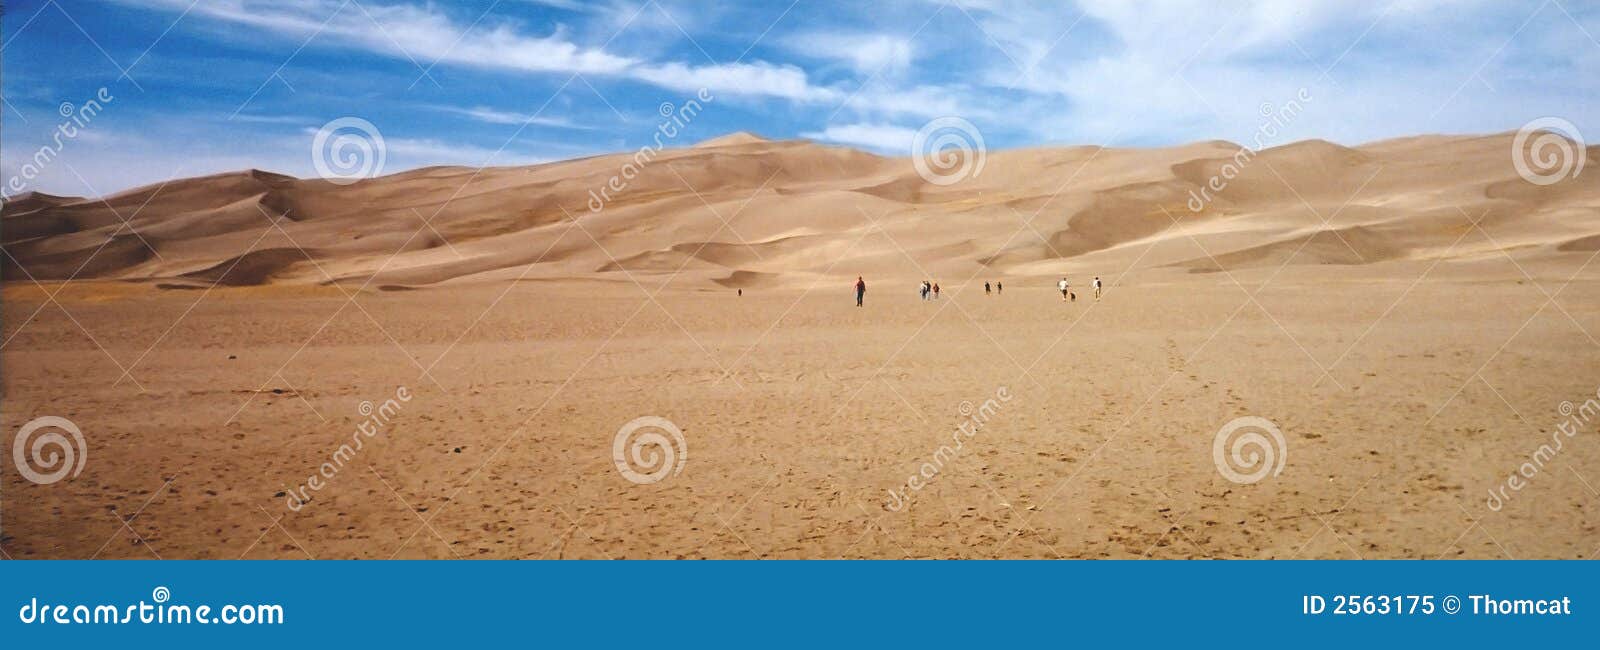 desert sand dunes new mexico